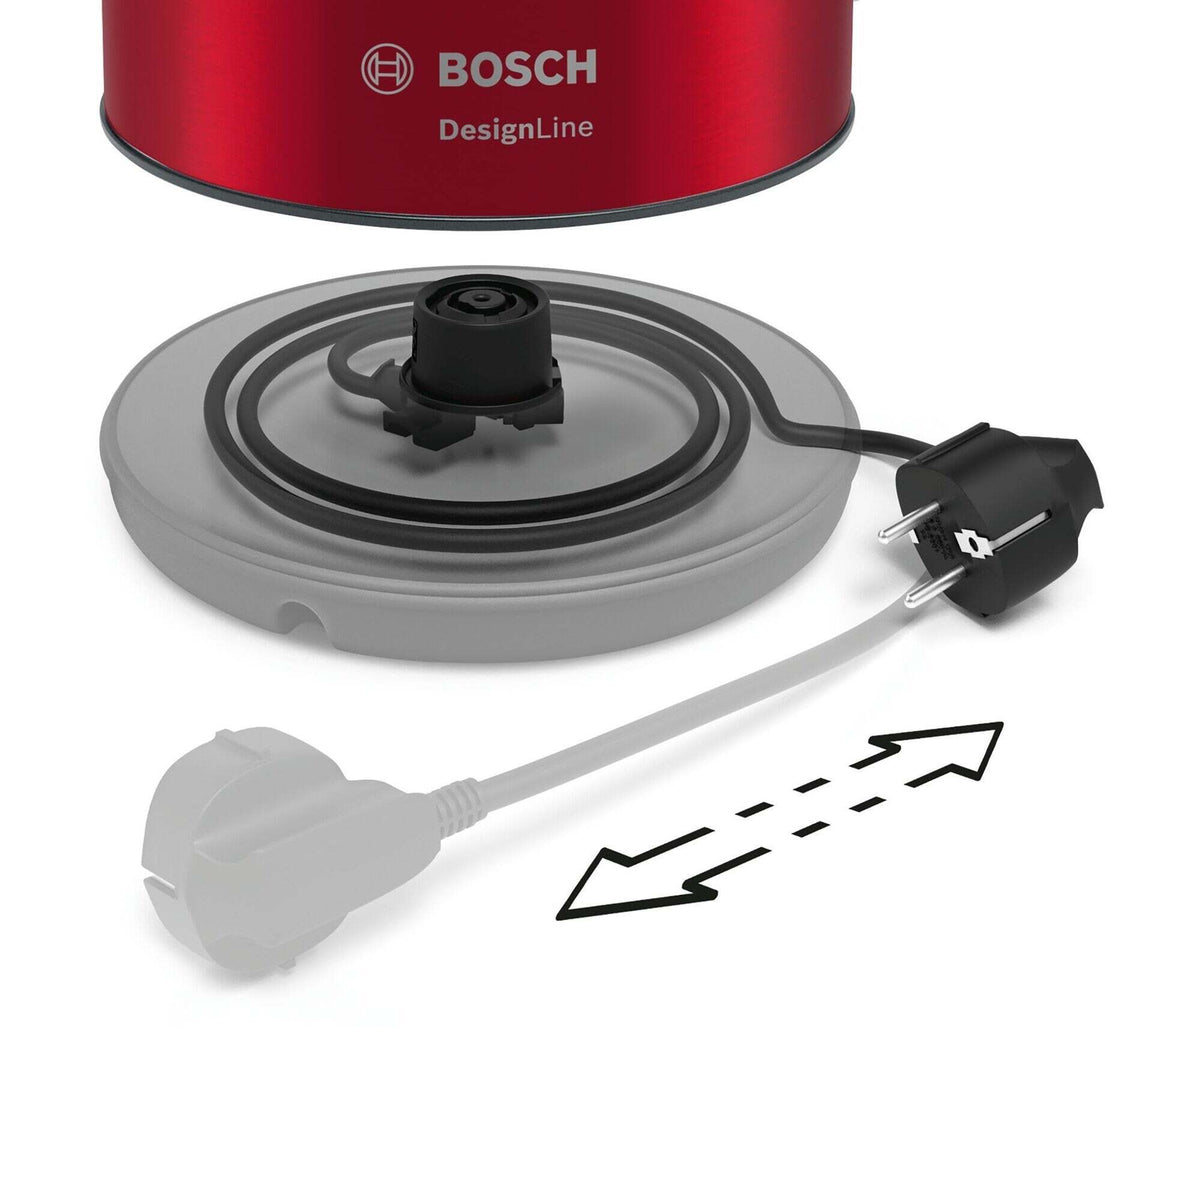 Rychlovarná konvice Bosch TWK3P424, červená, 1,7l